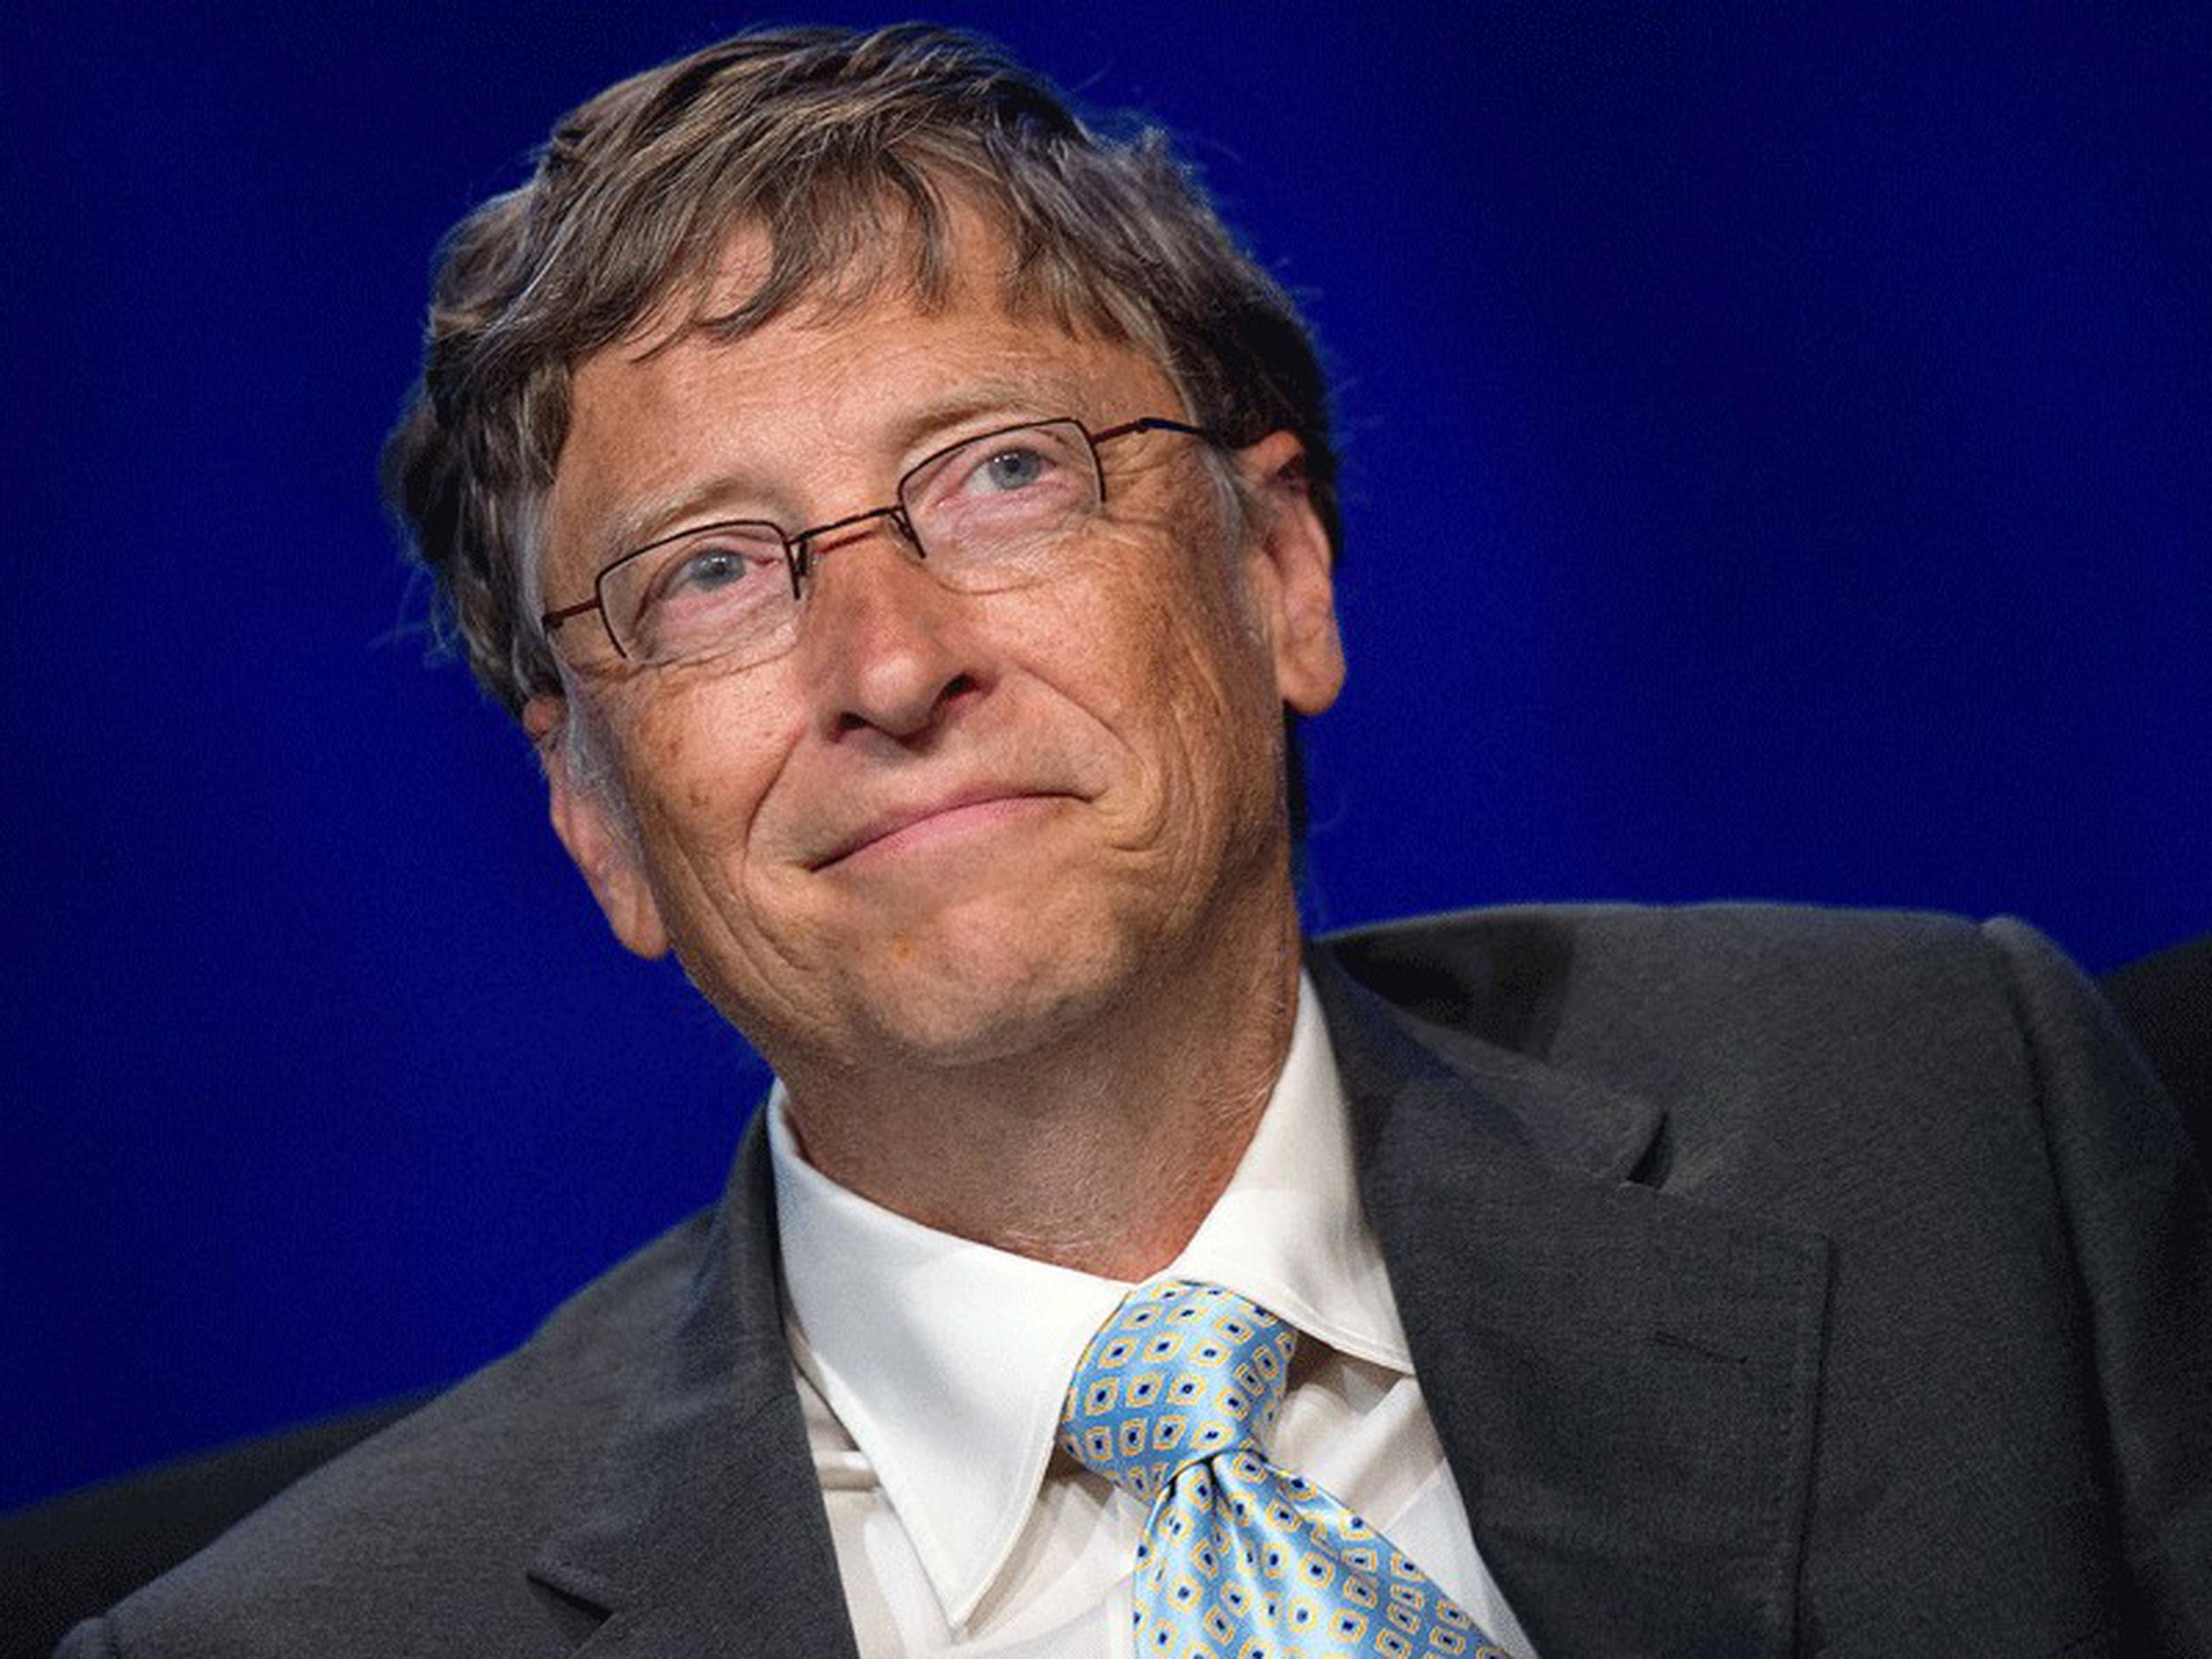 El primer lugar lo obtuvo Bill Gates con $76 billones. (Archivo)